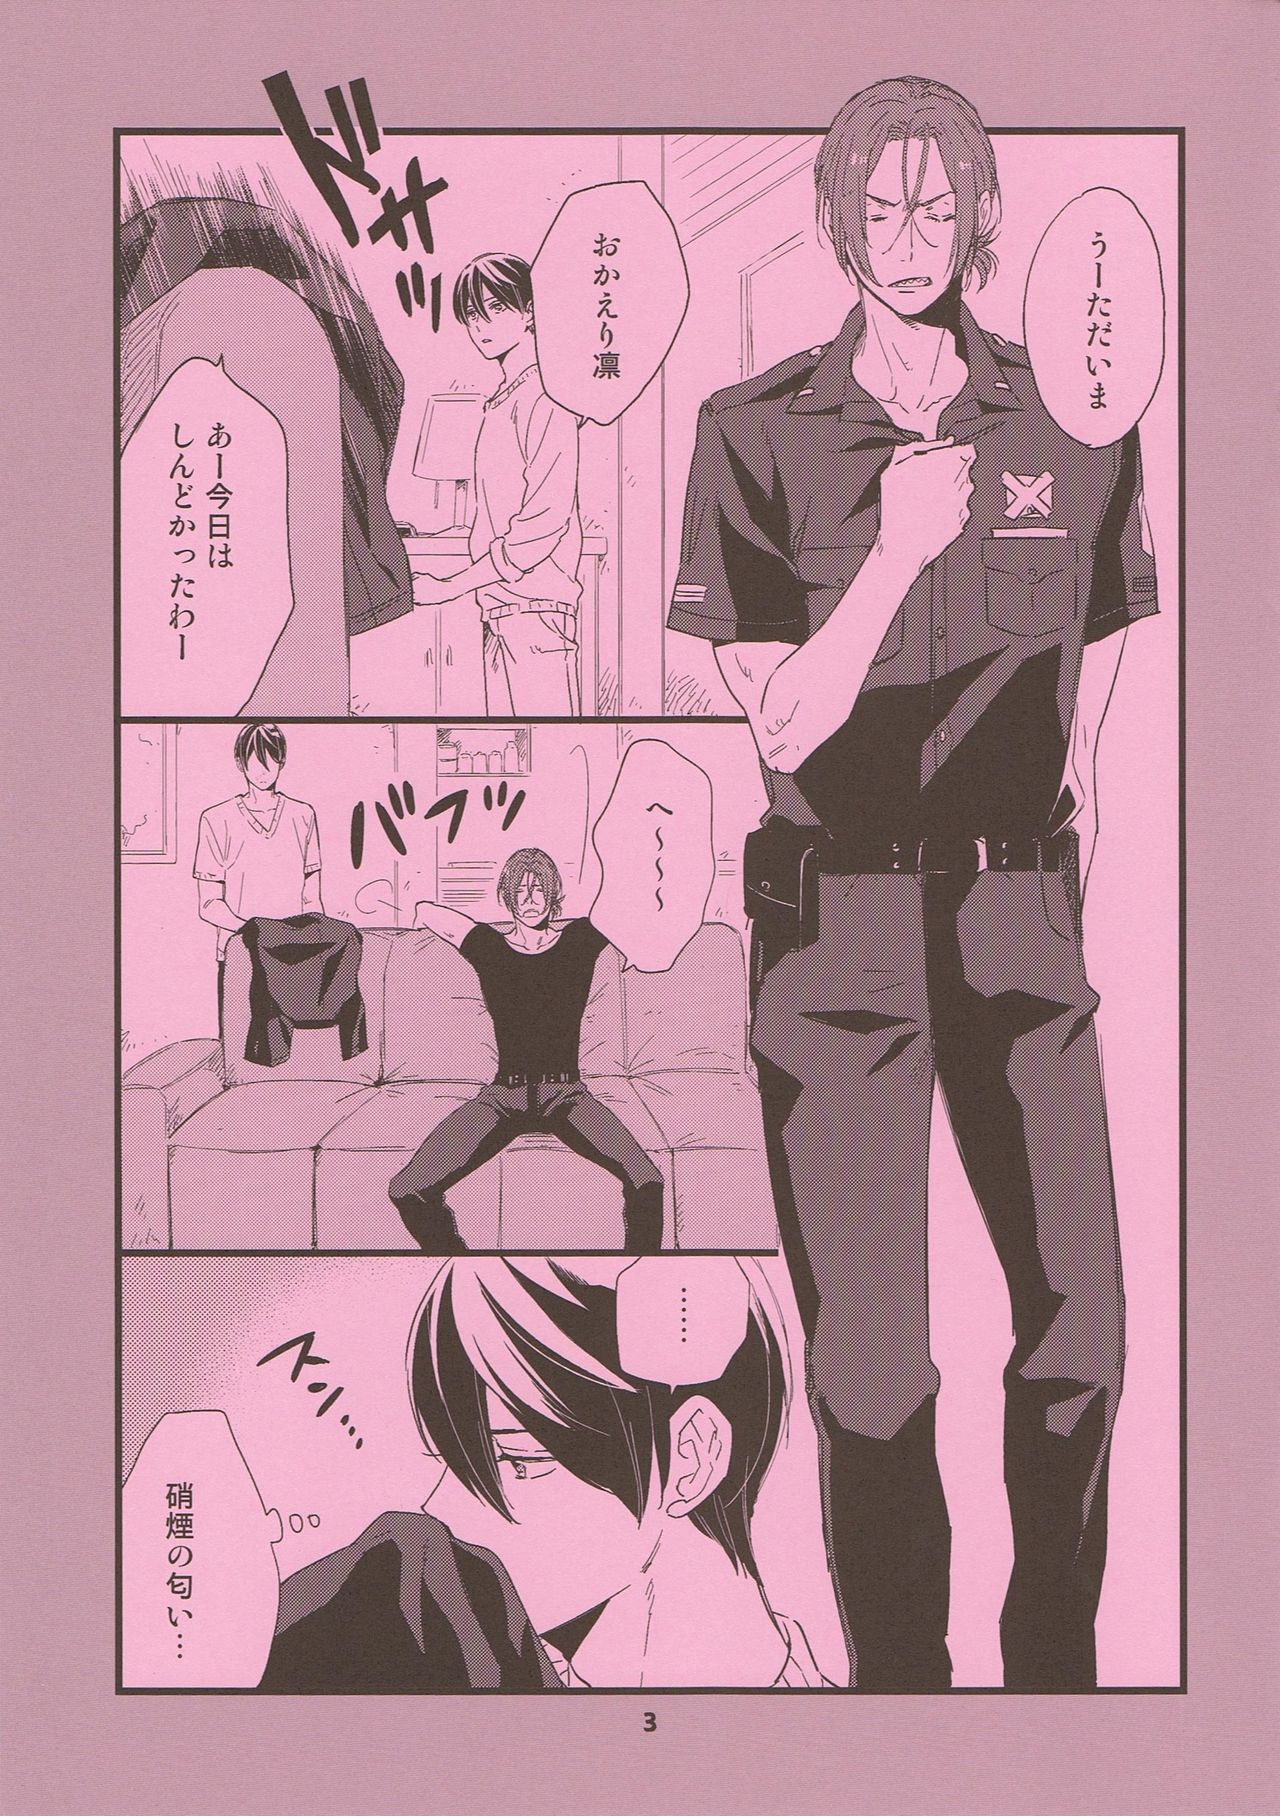 (SUPERKansai20) [KANGAROO KICK (Takagi Takumi)] Please arrest me. (Free!) (SUPER関西20) [KANGAROO KICK (高城たくみ)] Please arrest me. (Free!)